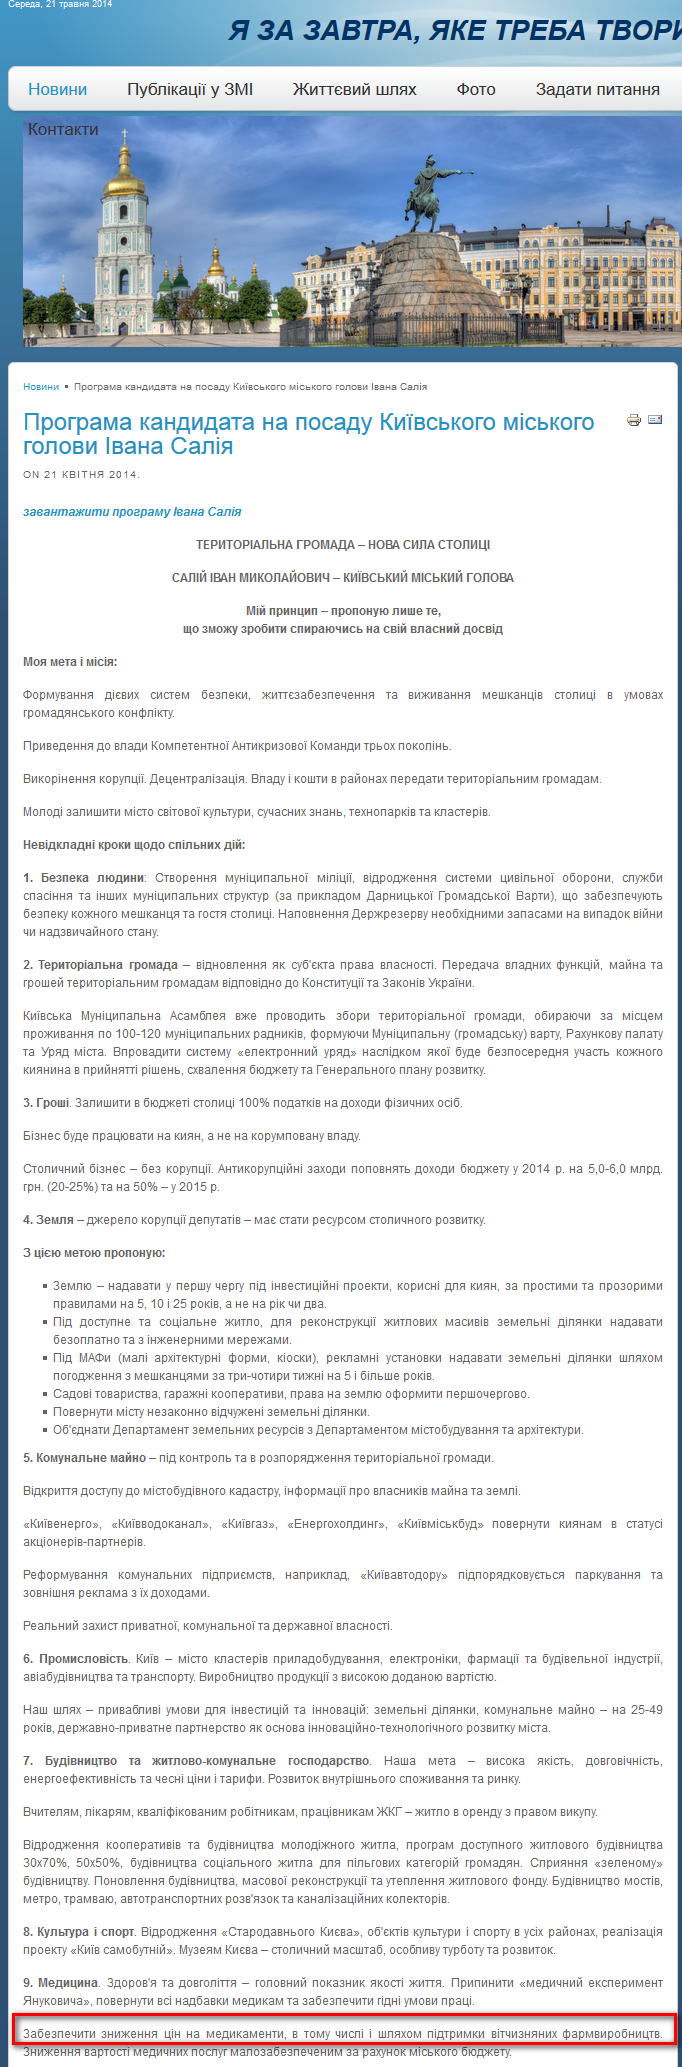 http://saliy.info/index.php/14-novyny/255-21-04-2014-8